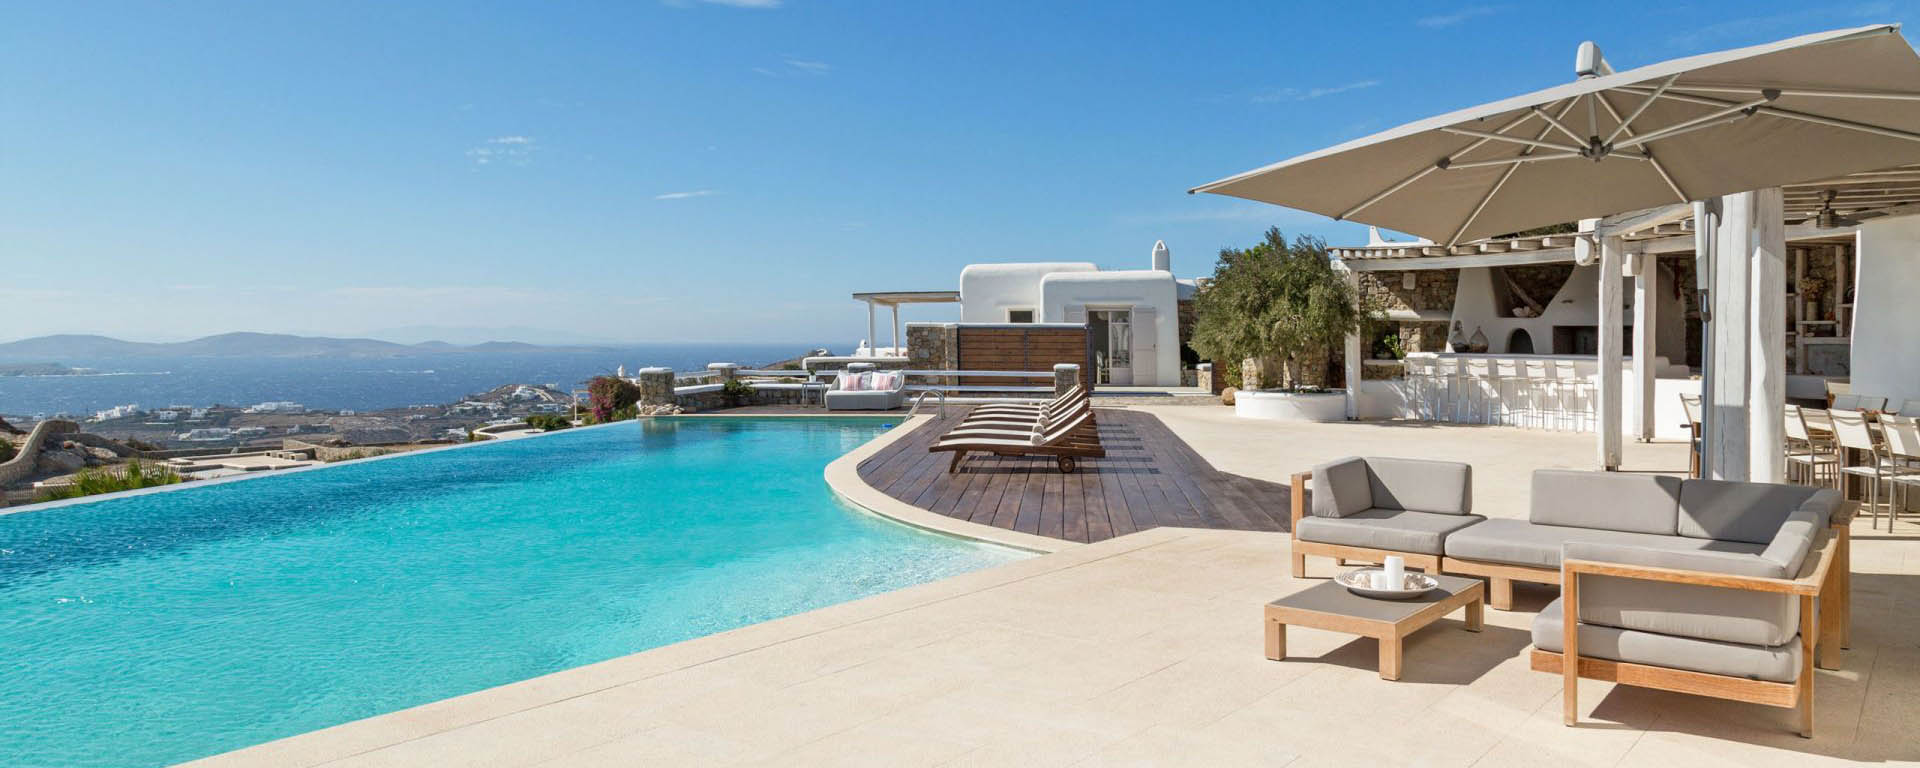 Ferienhaus mit Pool Mykonos